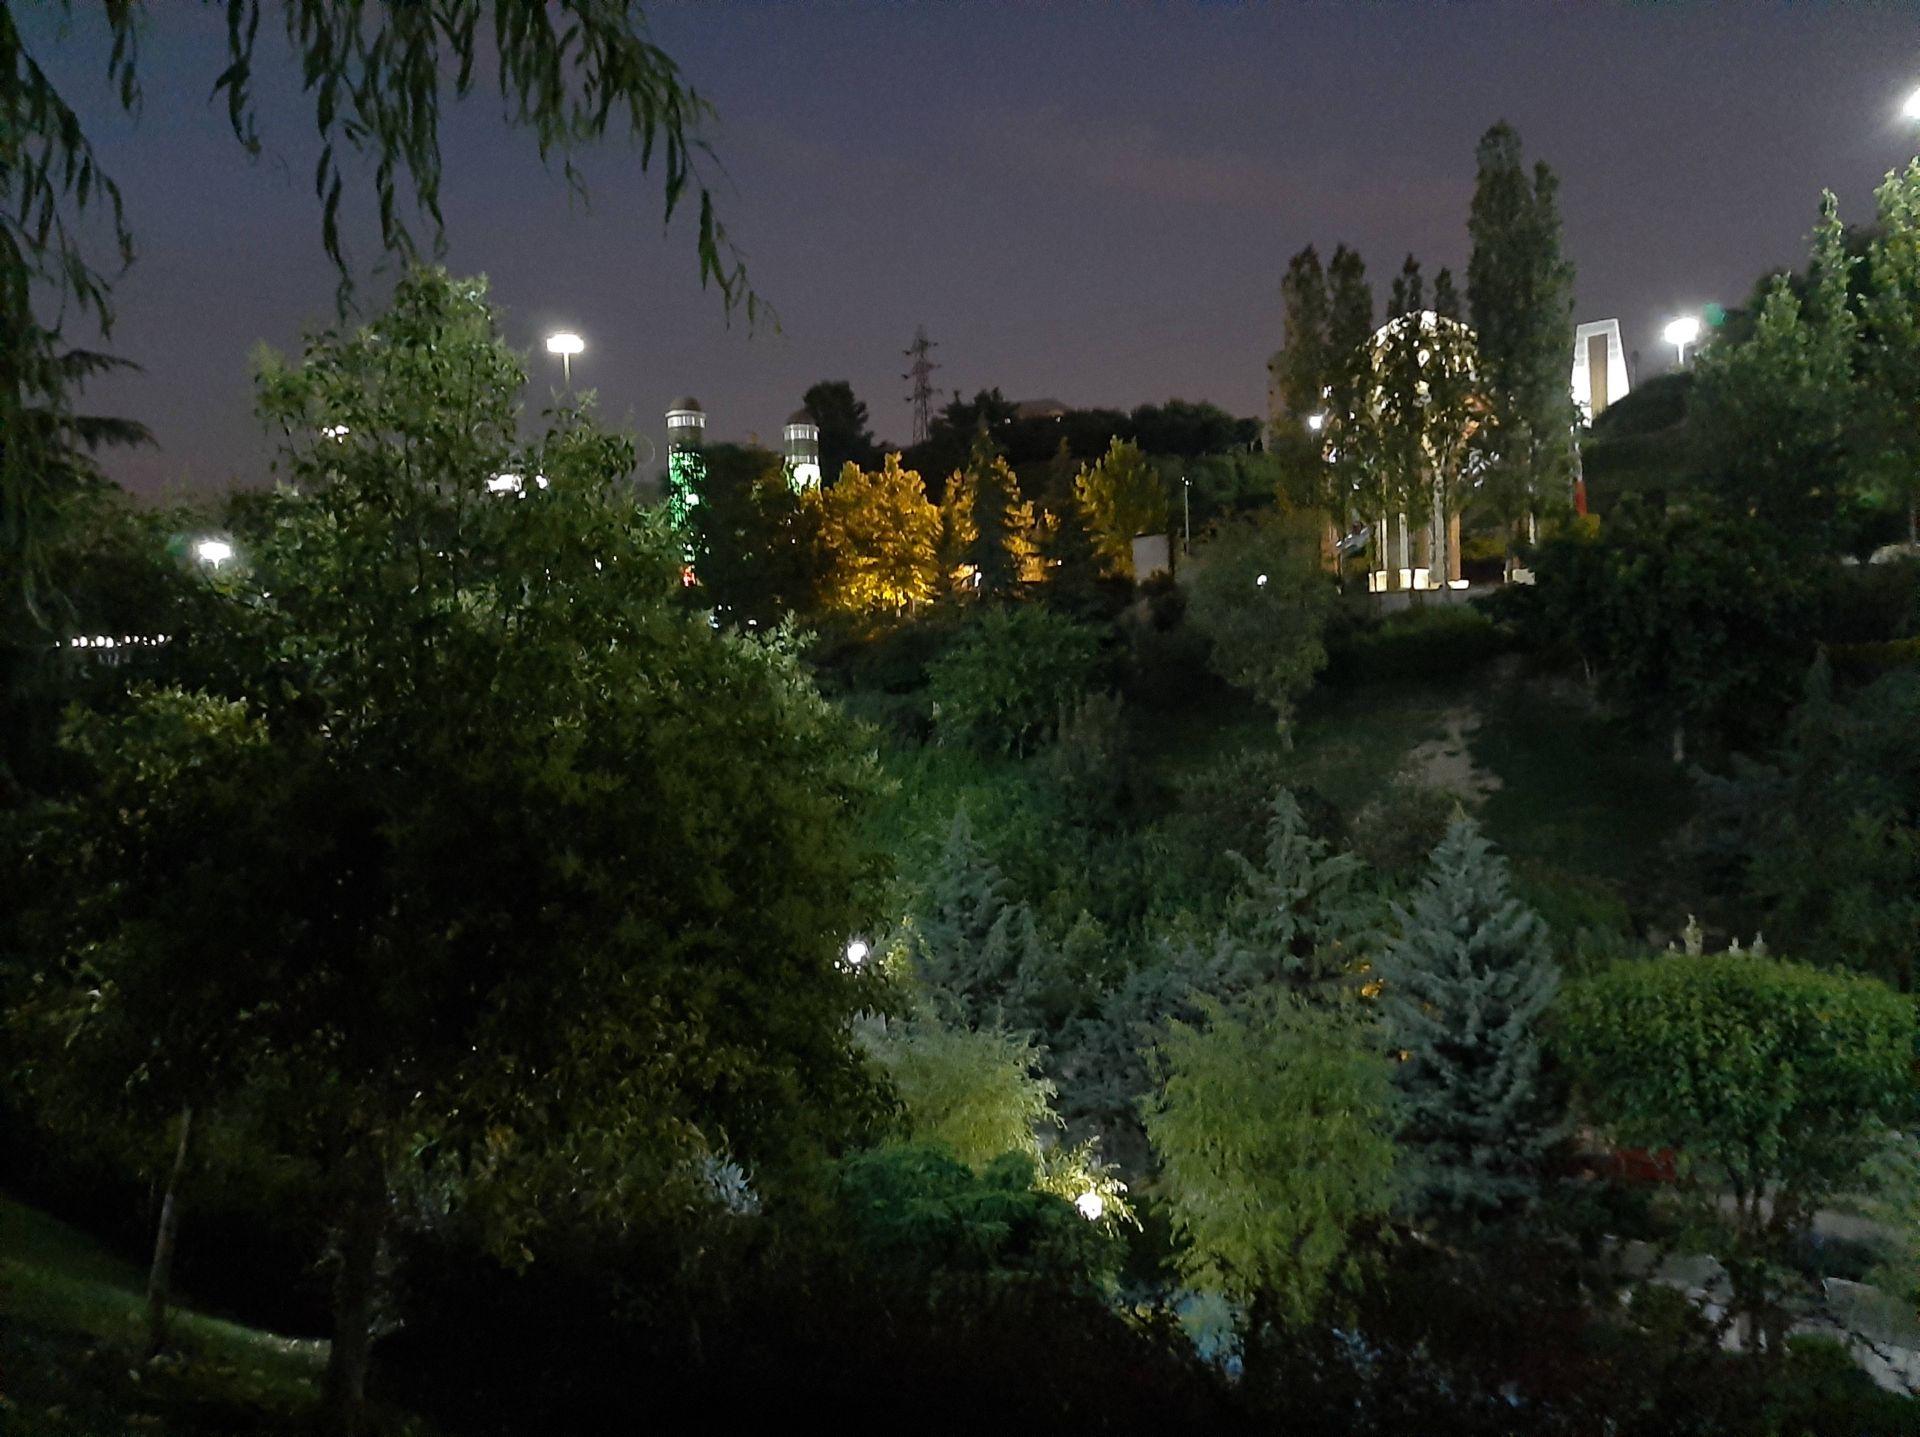 عکس گرفته شده با دوربین اصلی در شب